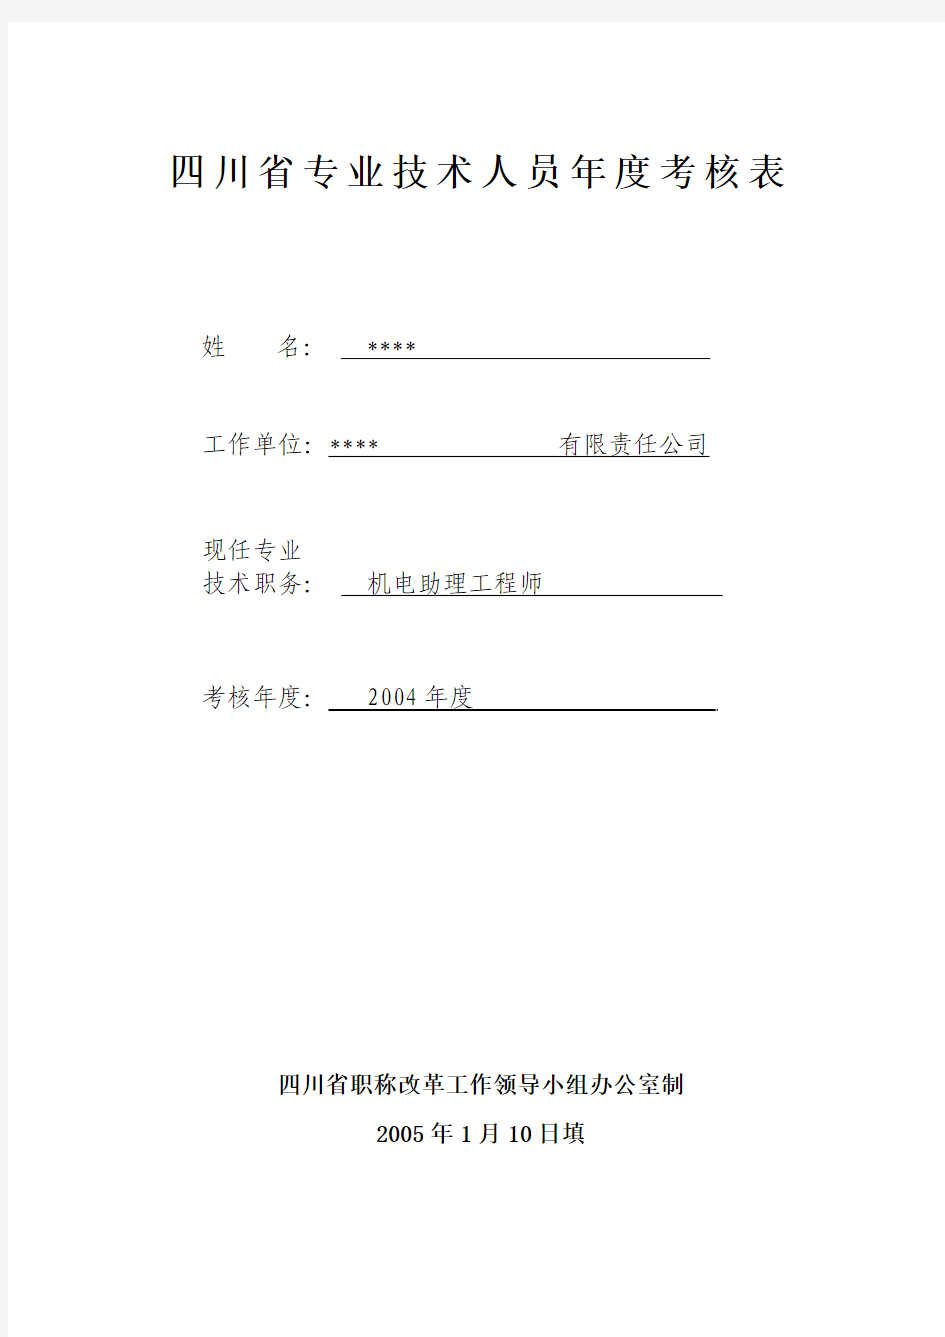 四川省专业技术人员年度考核表